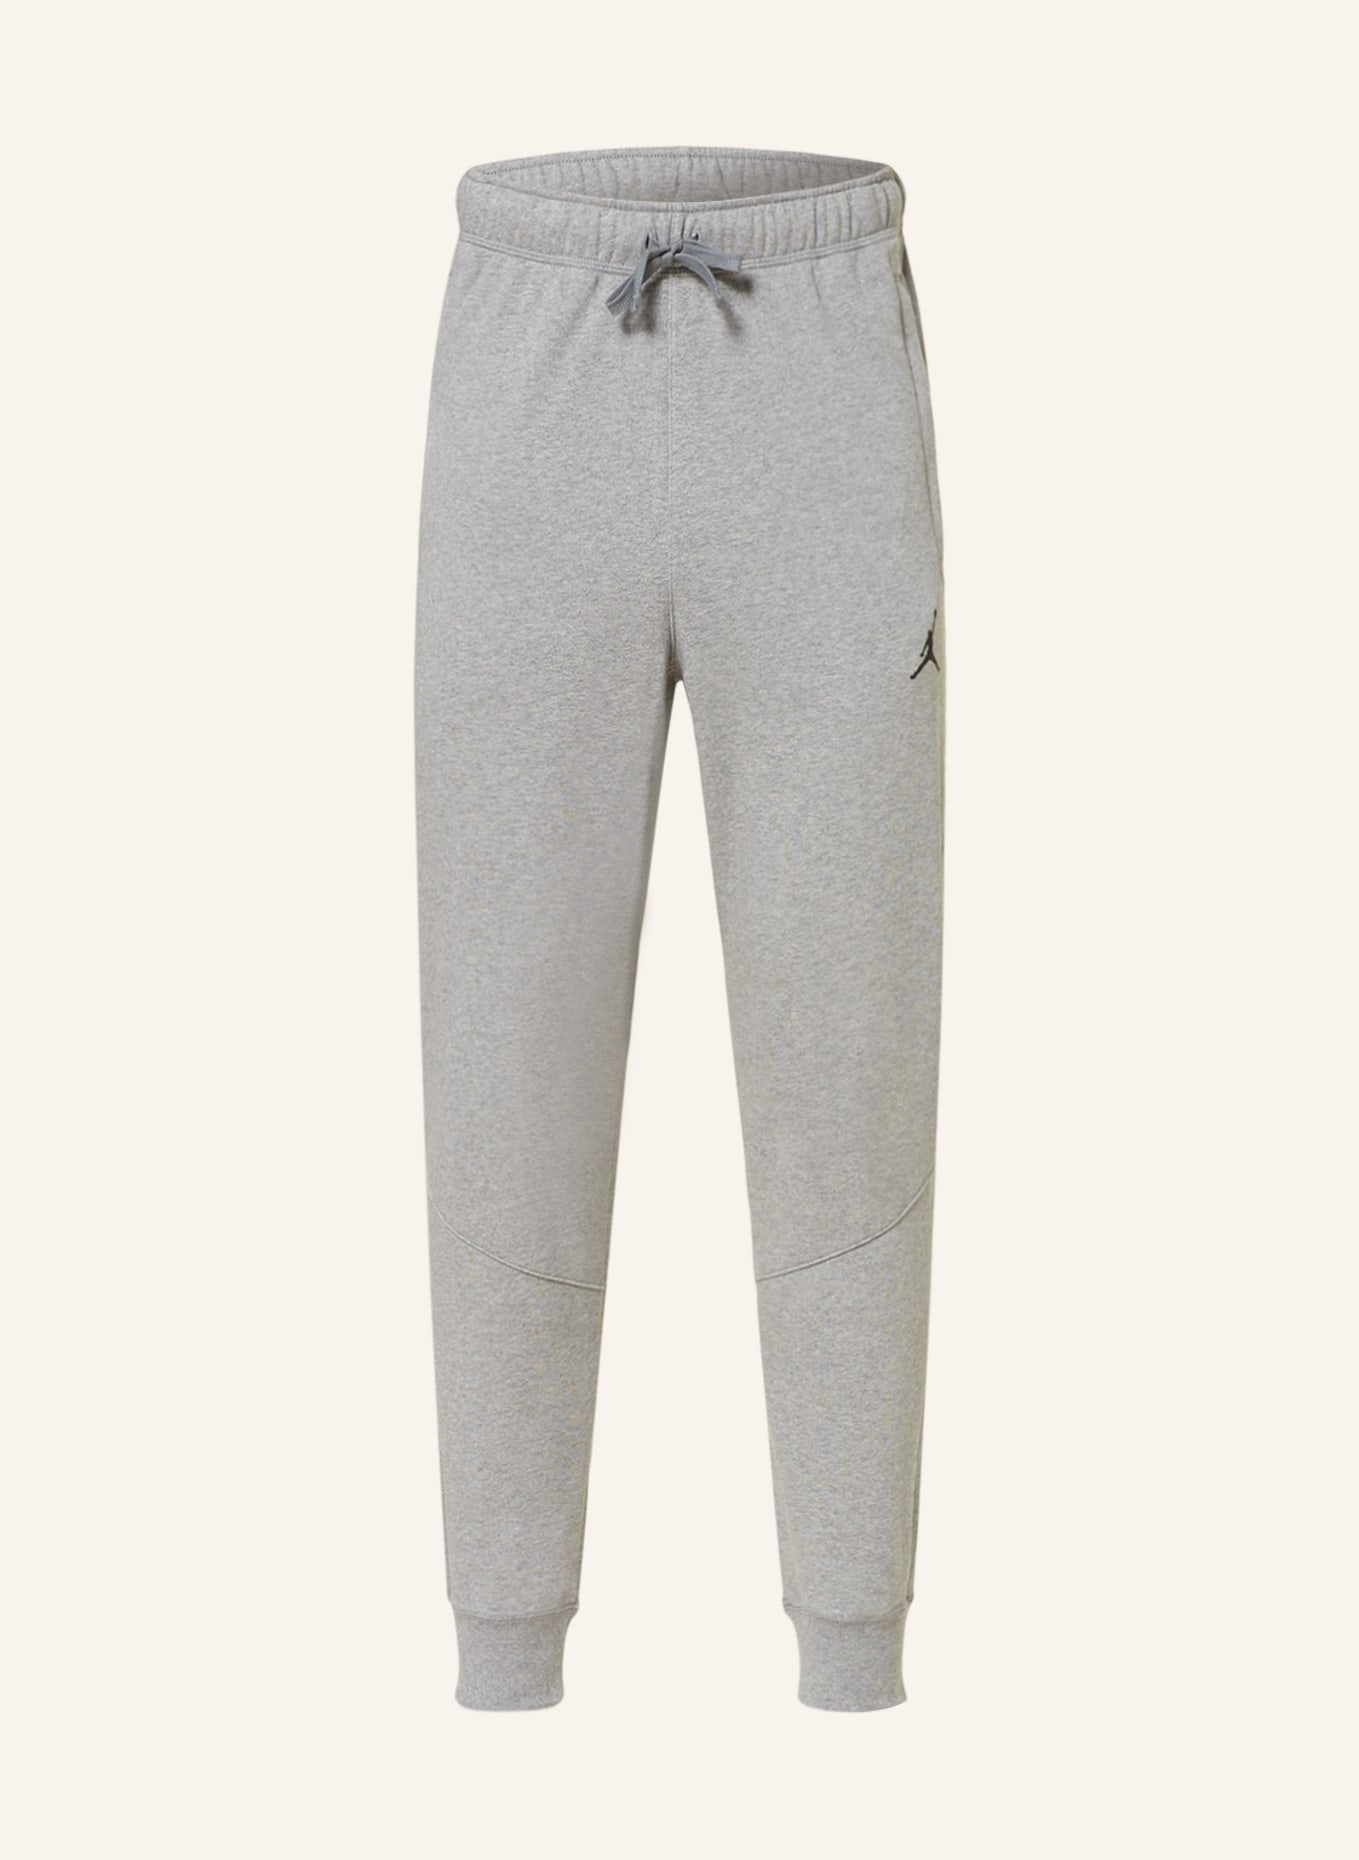 JORDAN Sweatpants DRI-FIT, Color: GRAY (Image 1)